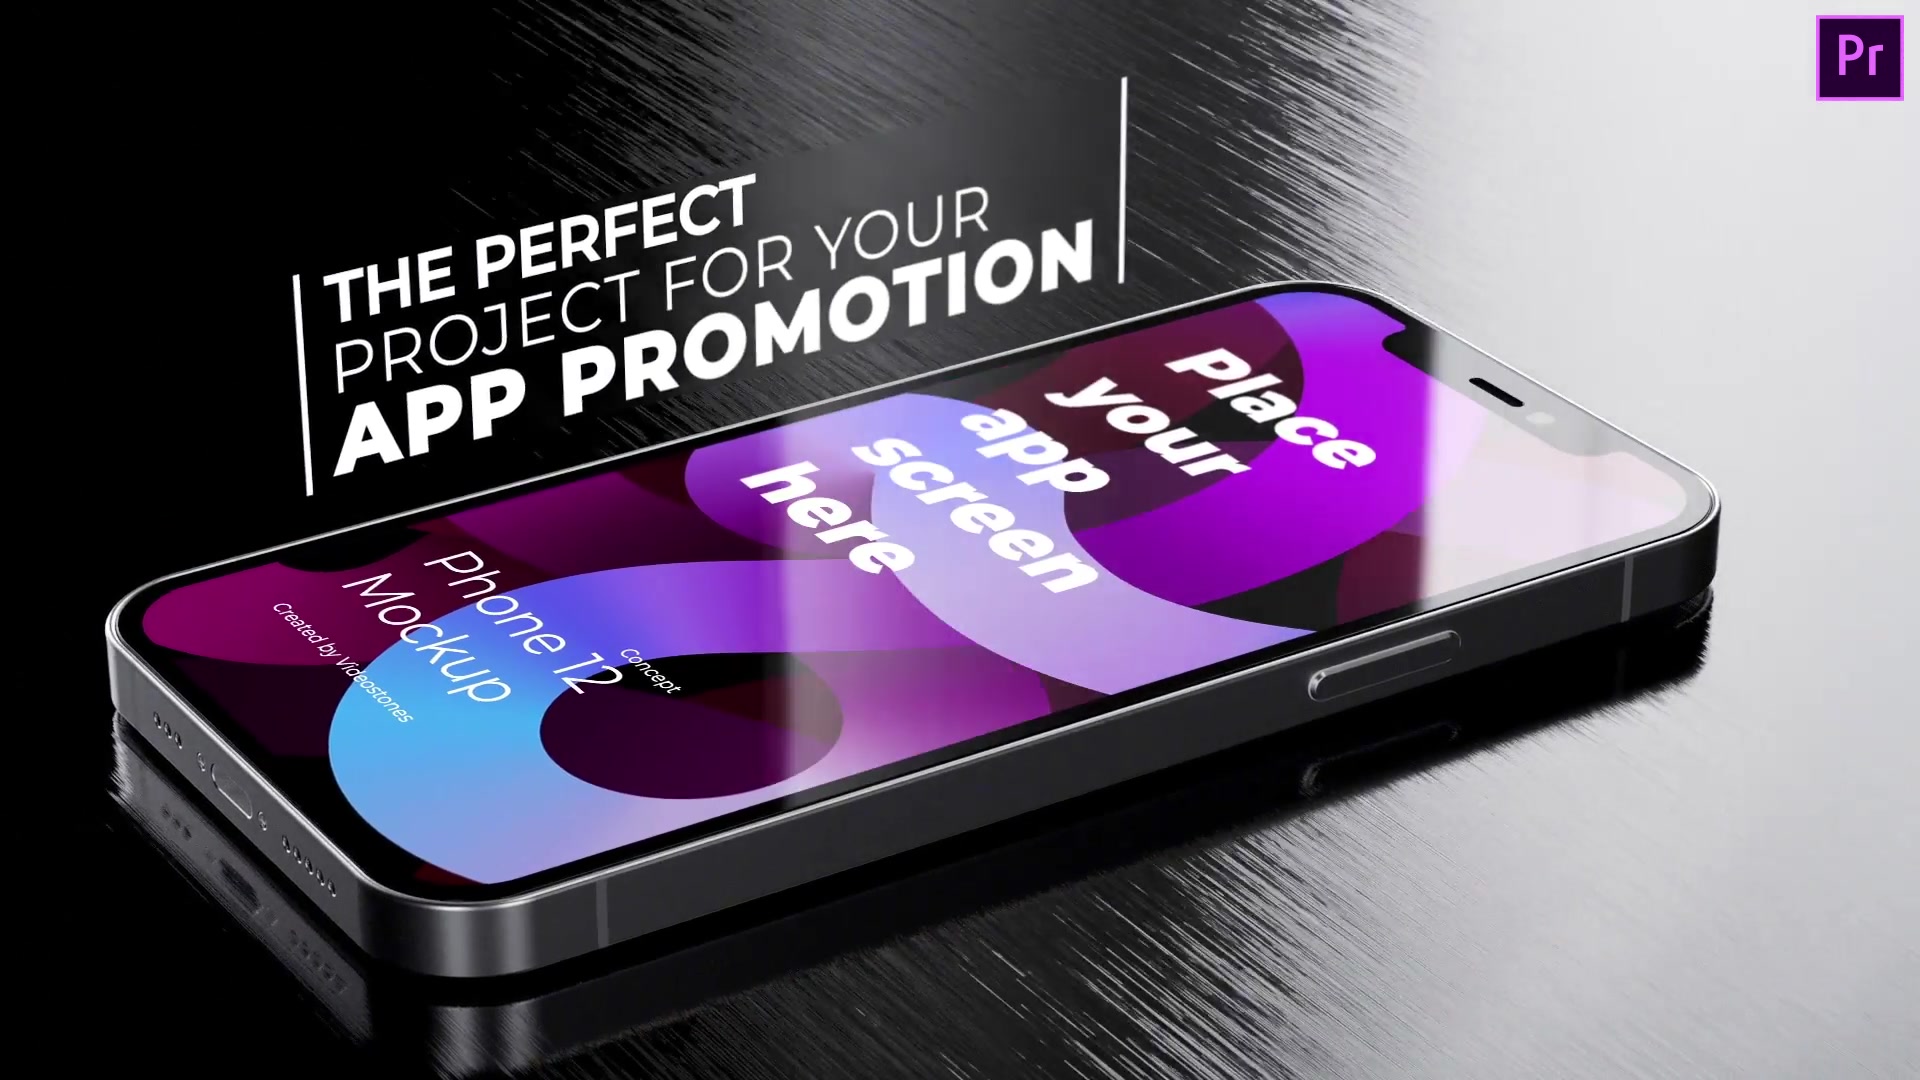 Inspiring App Promo | Mobile App Promo Kit | 3d Mobile Mockup | App Demo Video | Premiere Pro Videohive 34021149 Premiere Pro Image 4